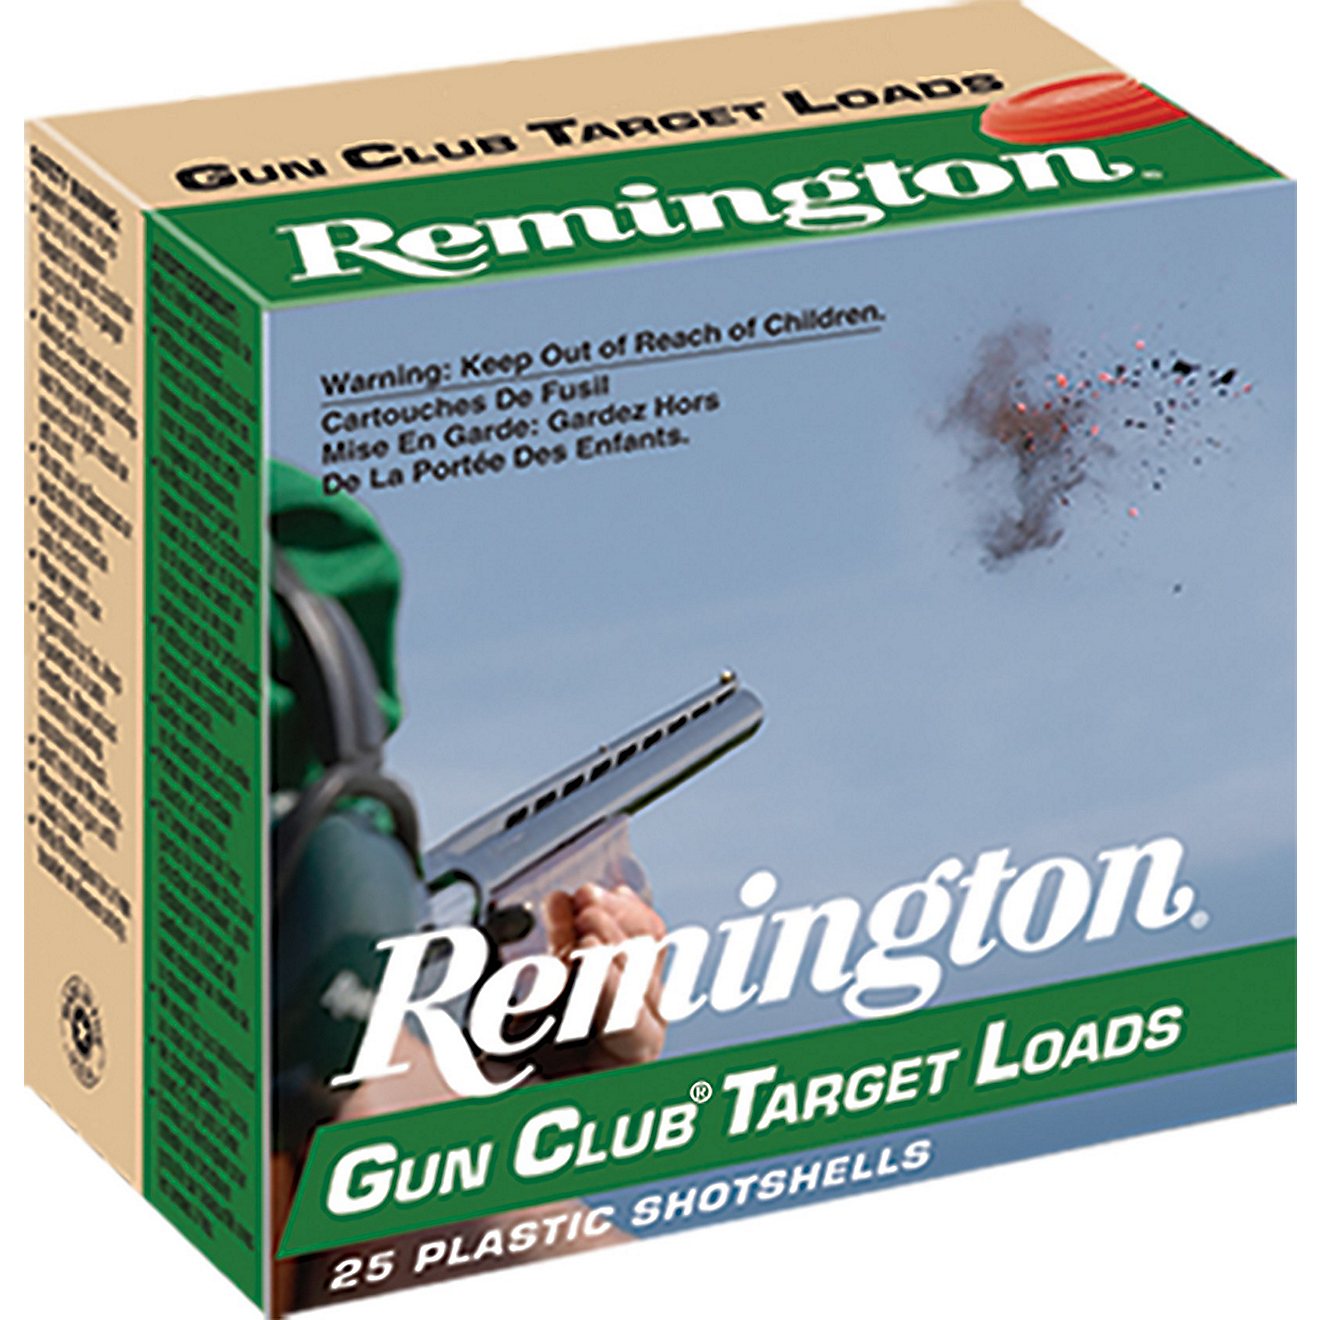 Remington Game Load Gun Club Target 12 Gauge Shotshells - 25 Rounds                                                              - view number 1